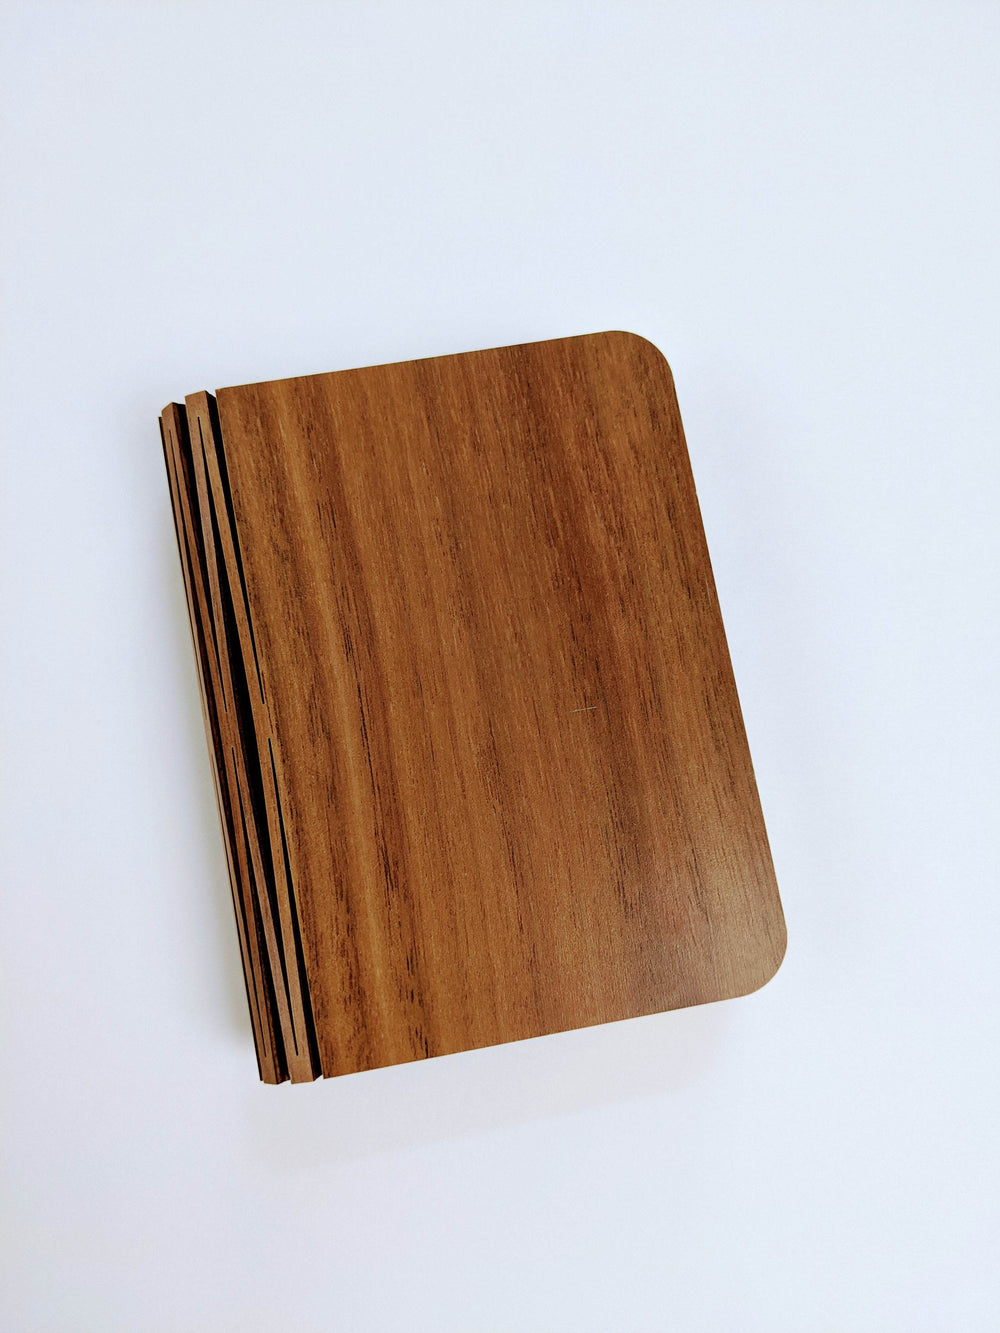 a wooden book